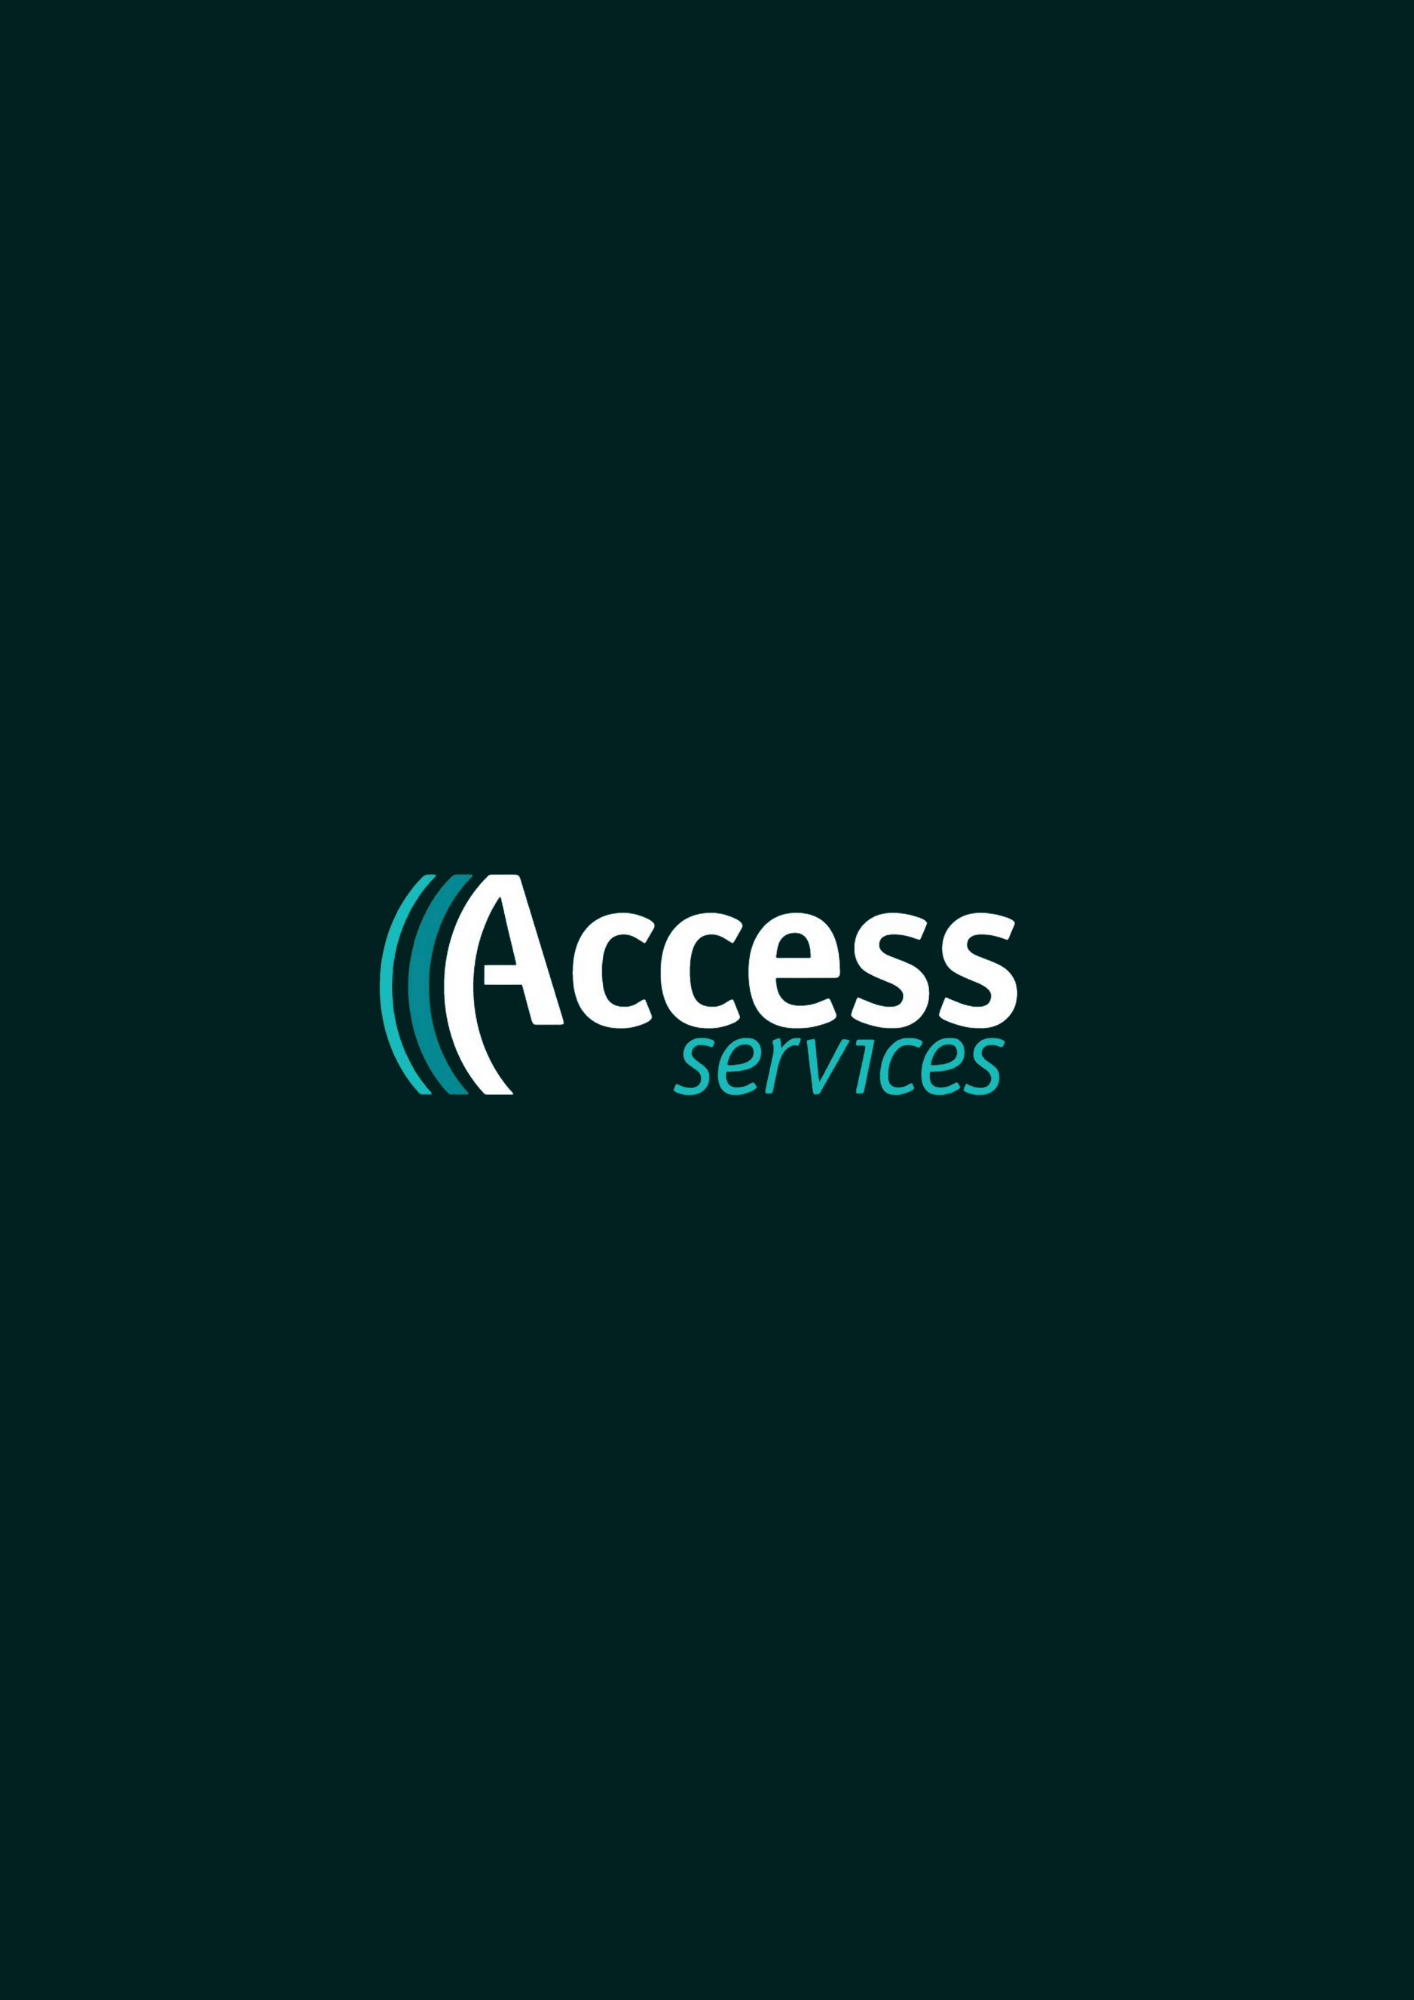 Access Services logo